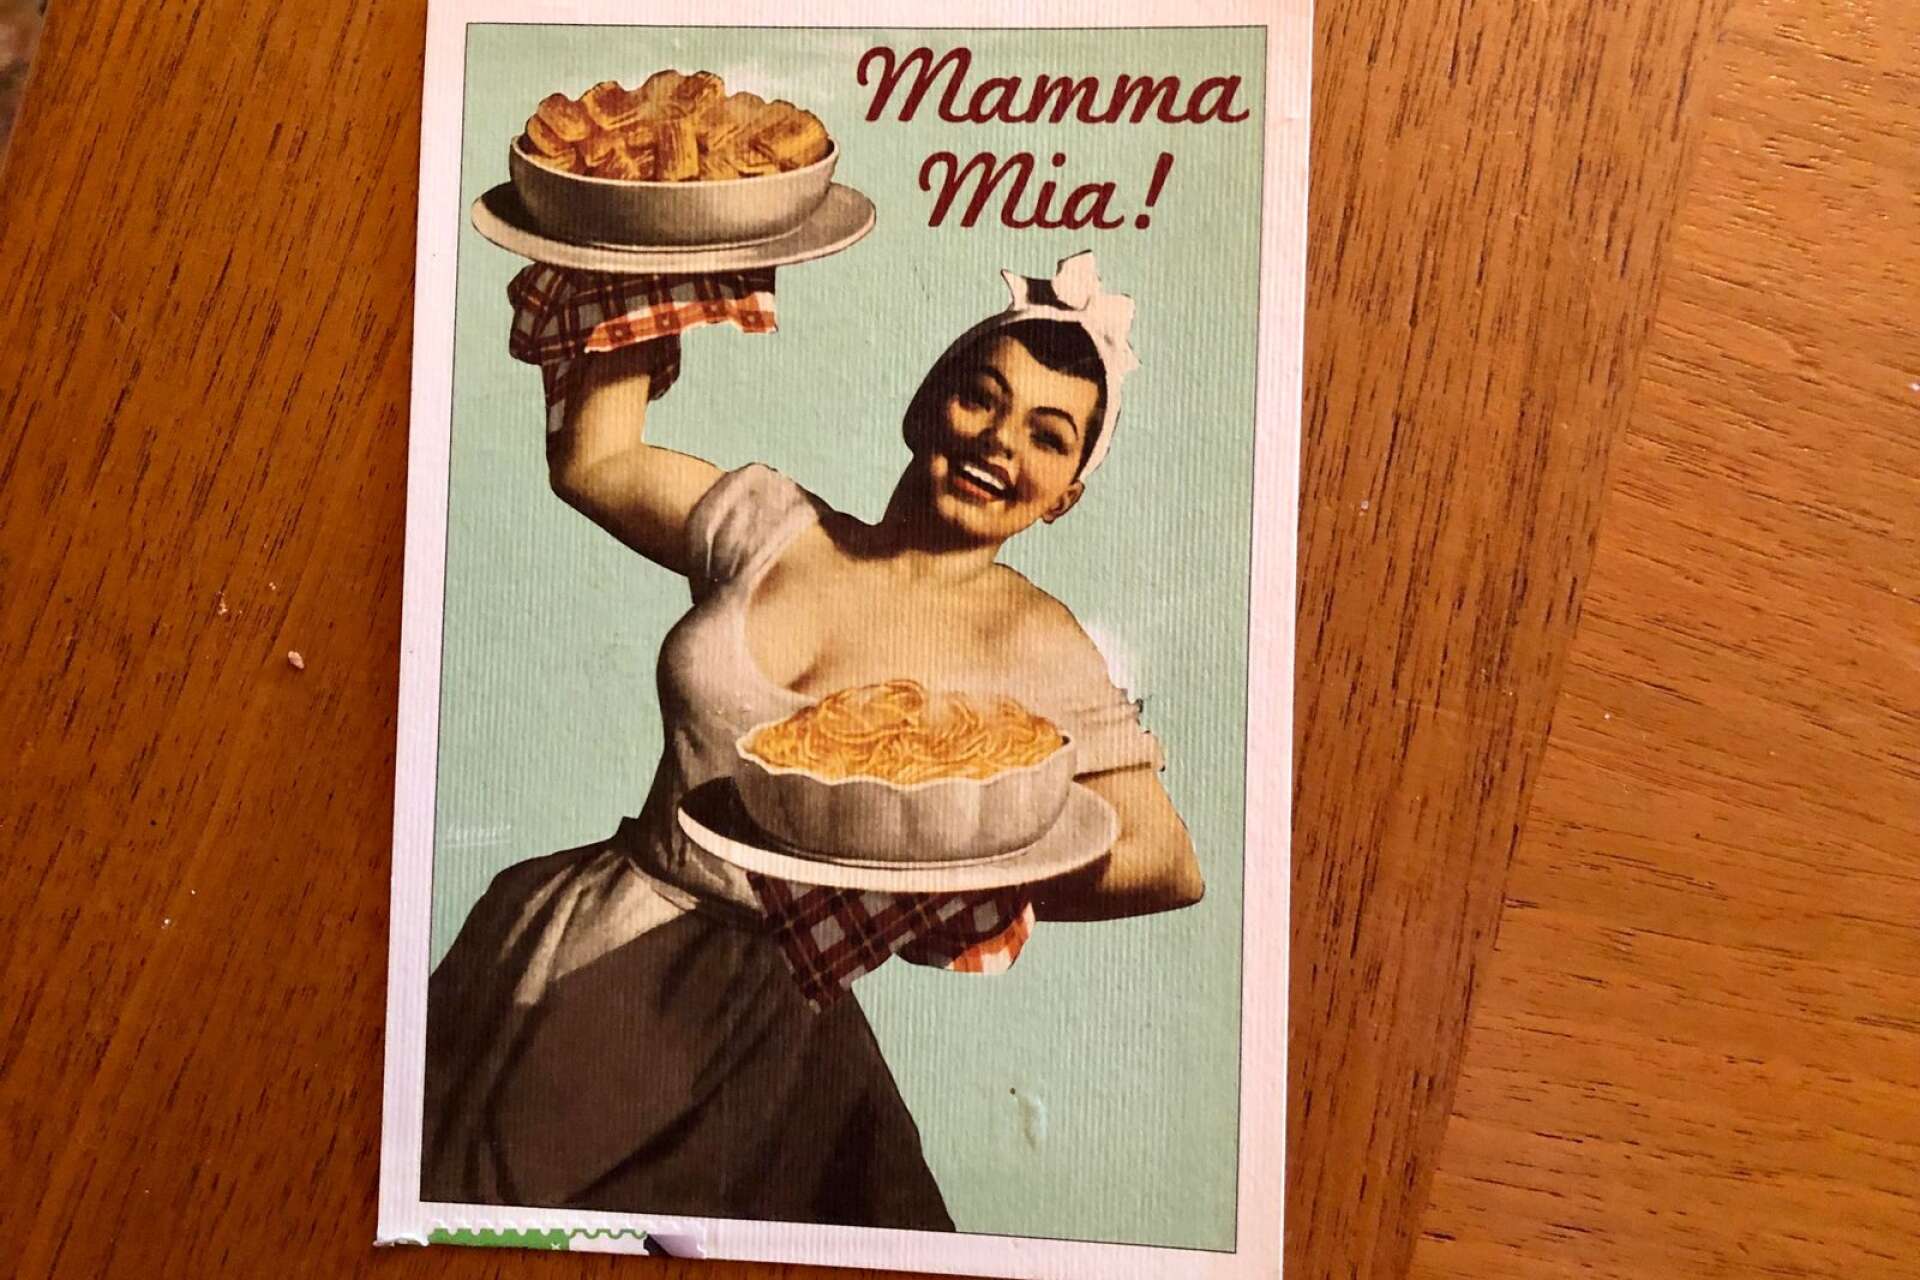 ”Mamma Mia!” står det på kortet som levererades med snigelpost från Italien.